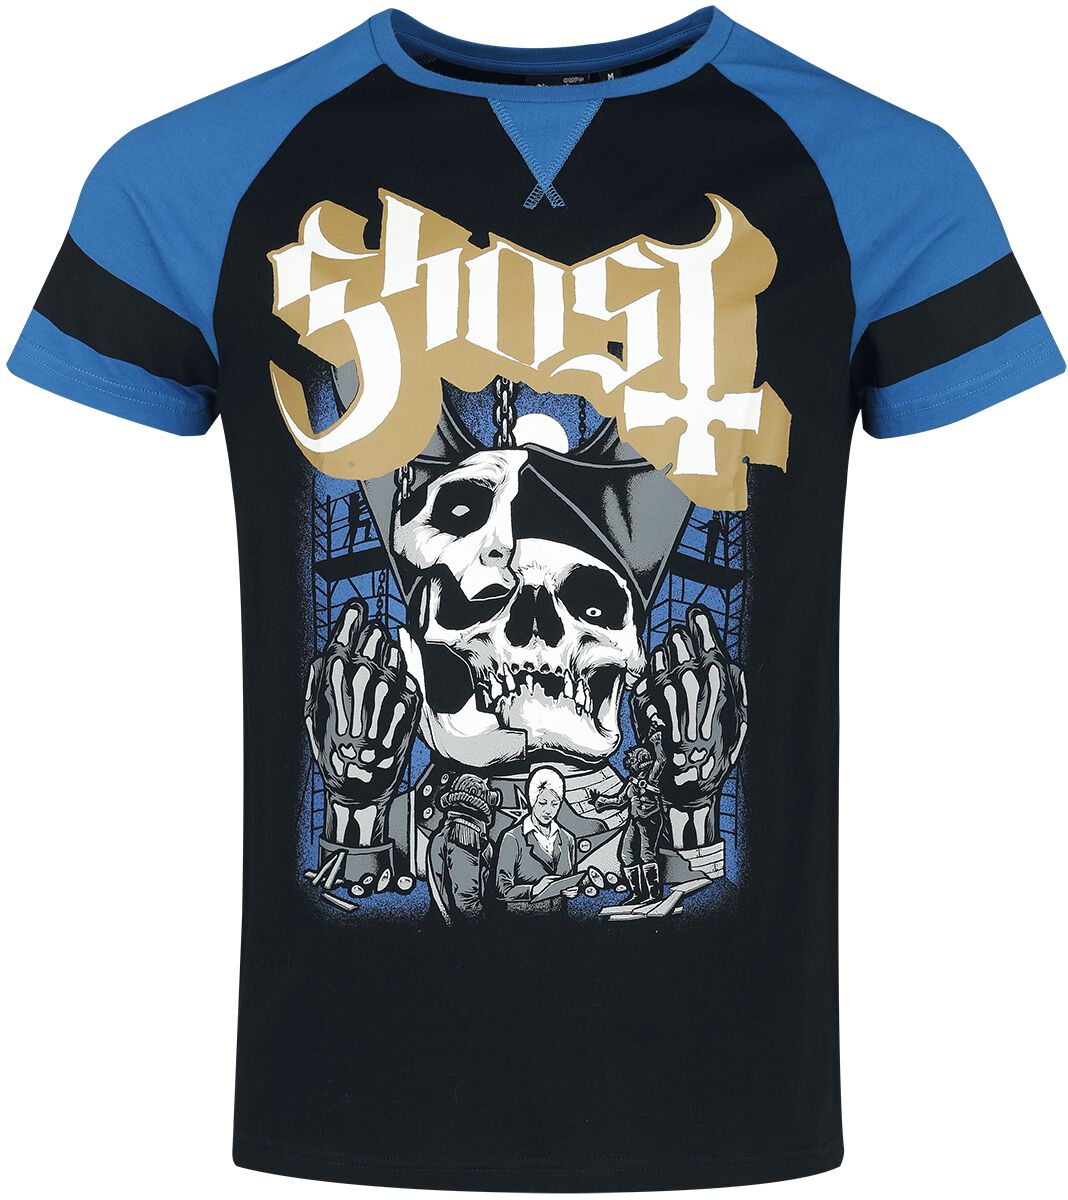 Ghost T-Shirt - EMP Signature Collection - S bis 3XL - für Männer - Größe S - schwarz/blau  - EMP exklusives Merchandise!